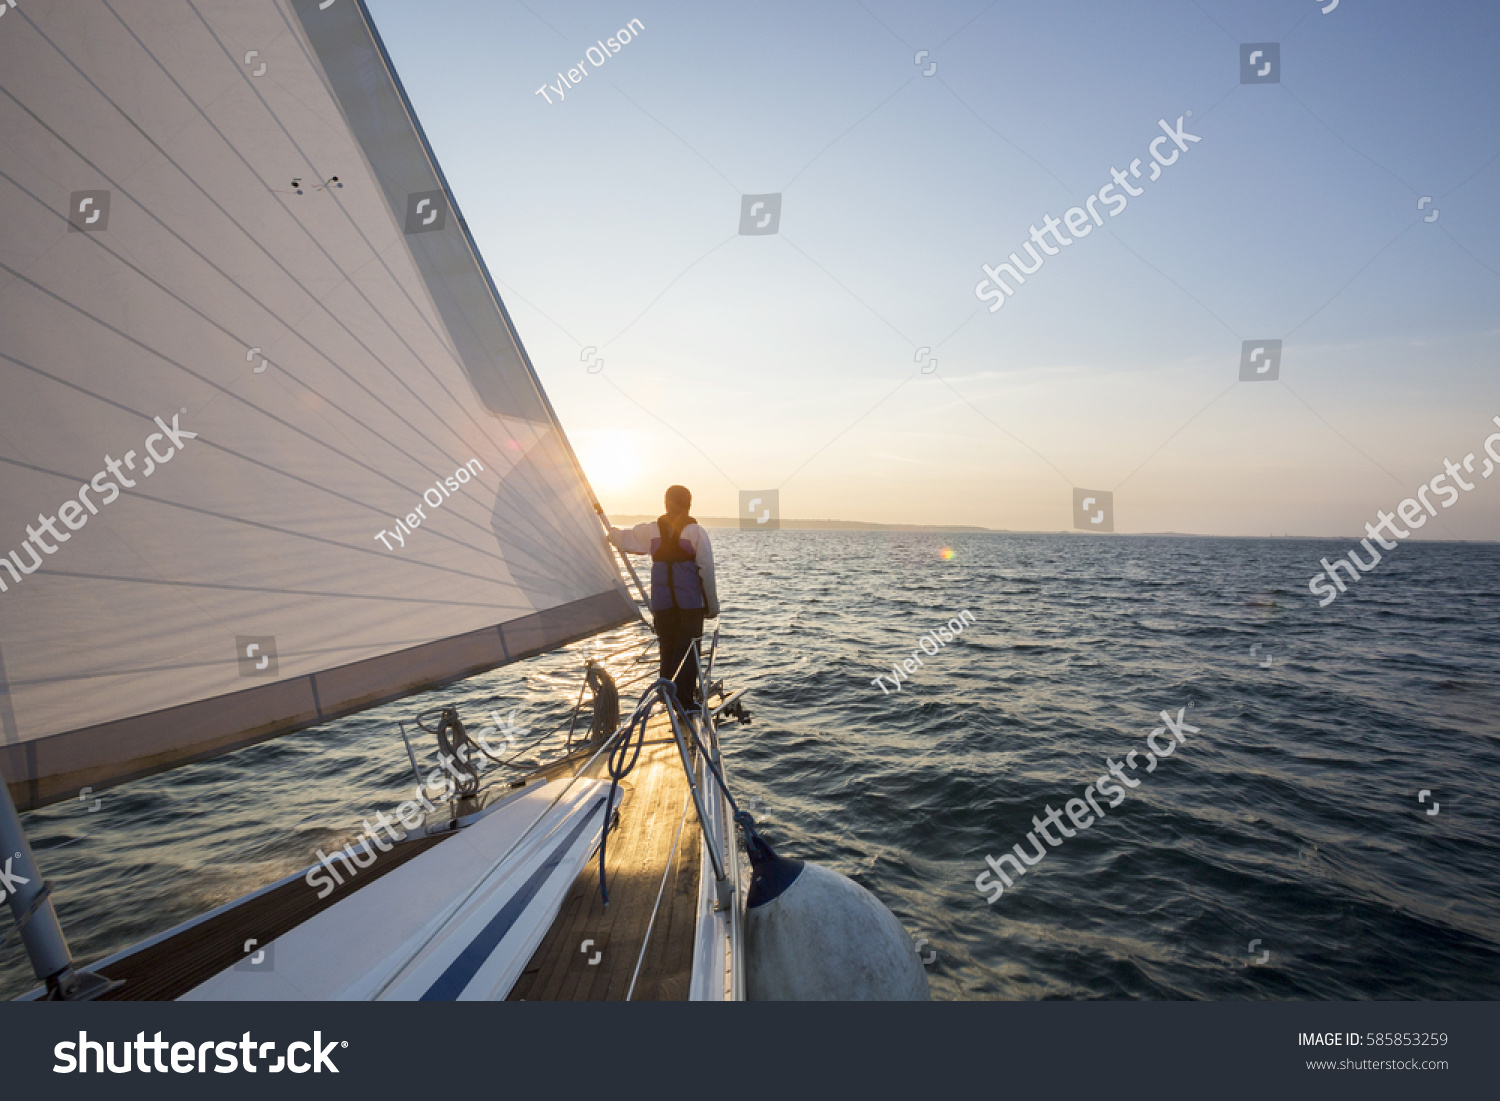 Man Looking At Beautiful Sea From Bow Of Sail Boat #585853259